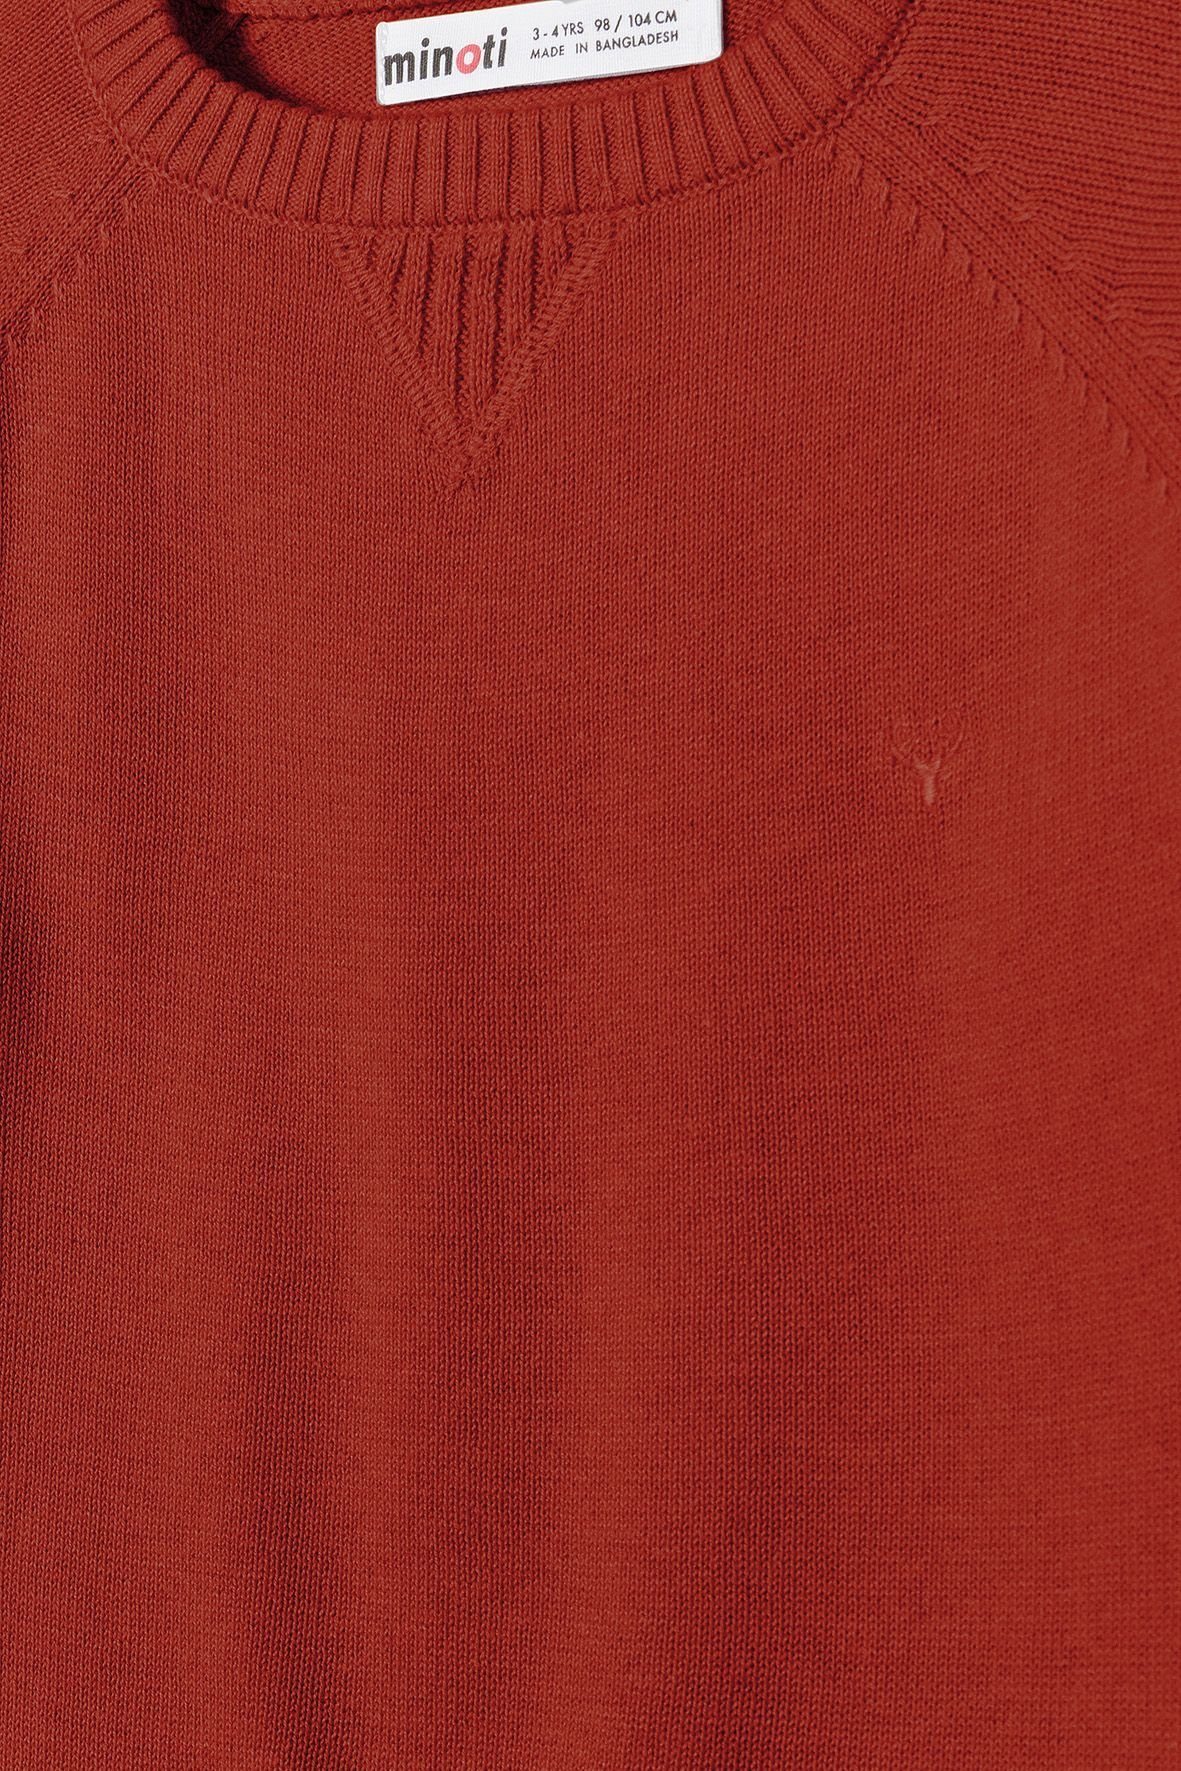 Rot Strickstoff aus MINOTI (12m-14y) Rundhalspullover